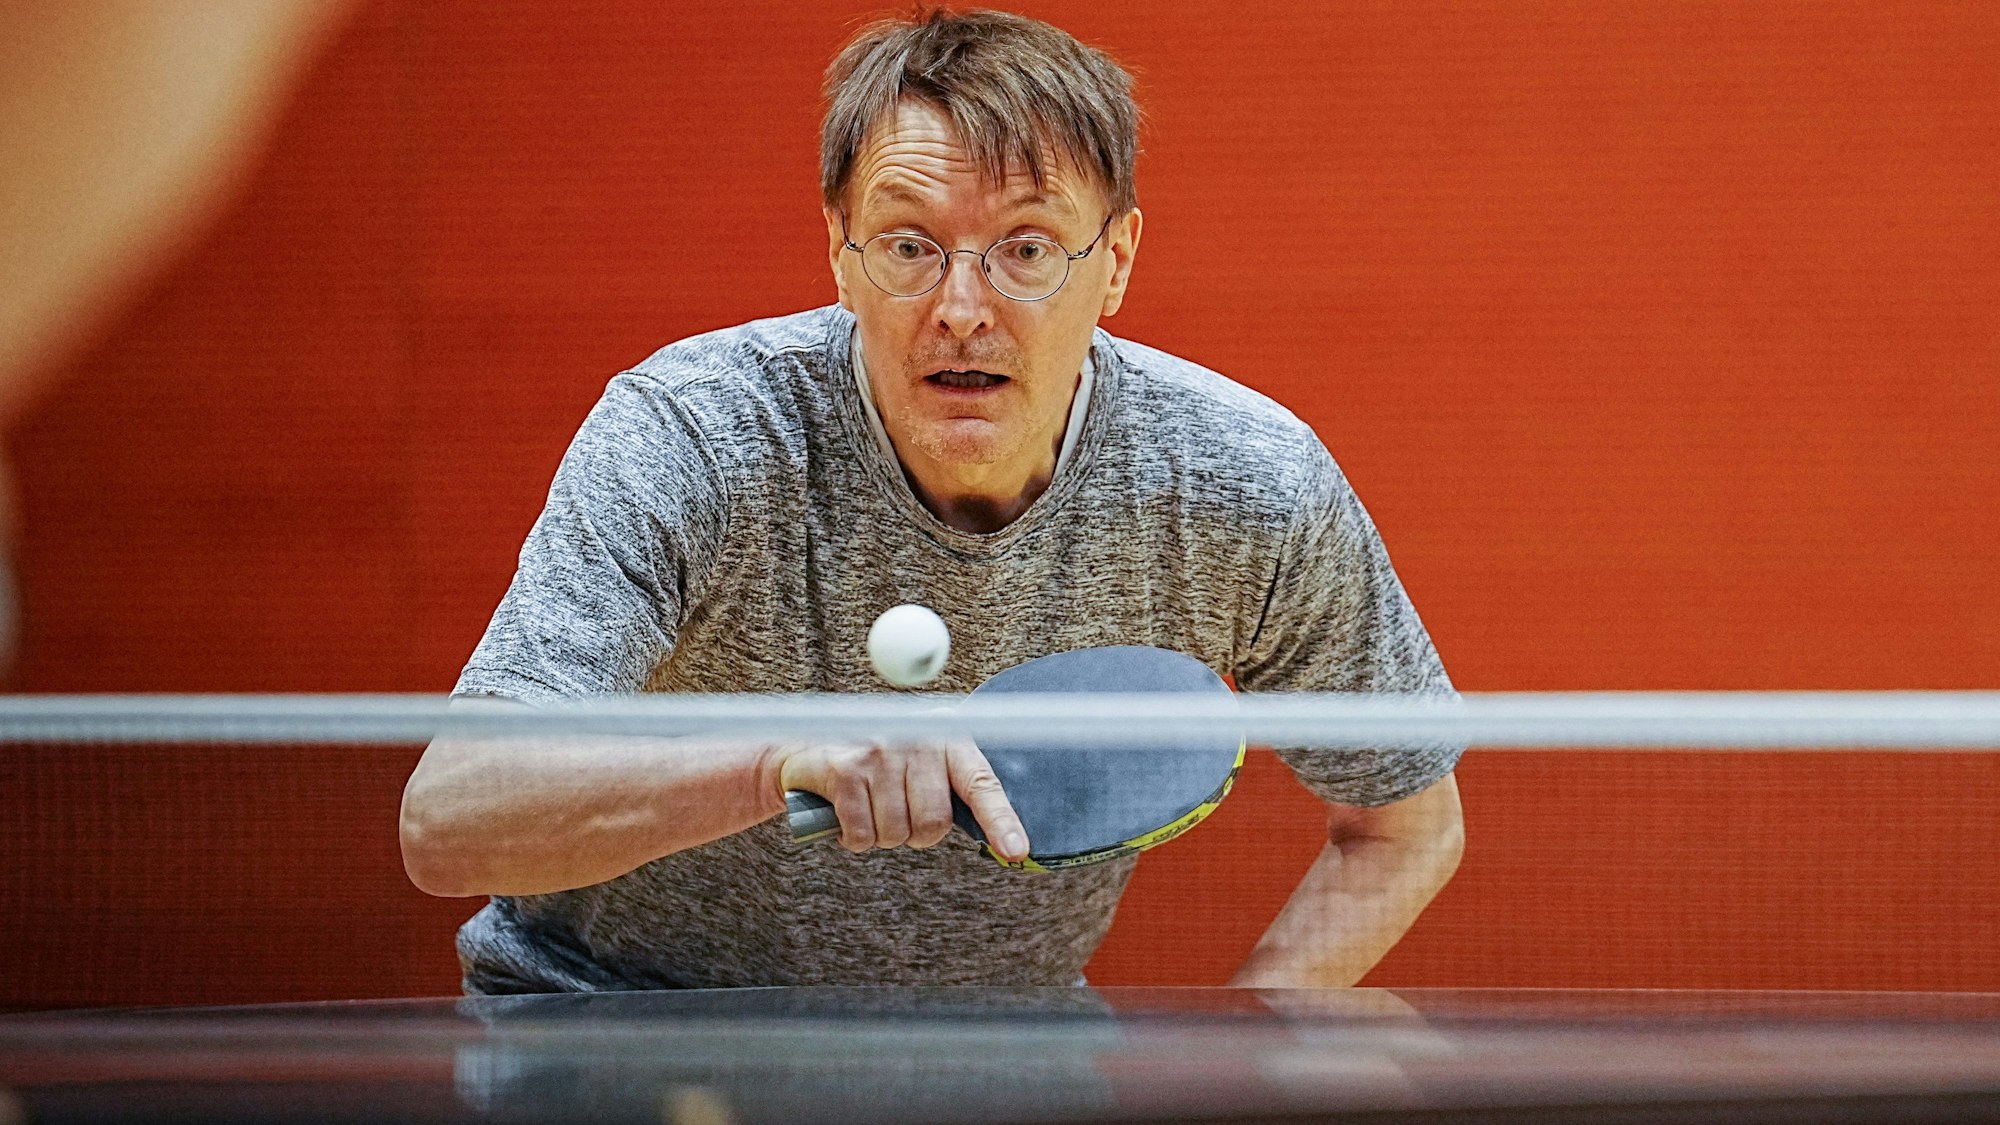 Karl Lauterbach (SPD), Bundesminister für Gesundheit, spielt bei einem Benefizturnier für Parkinson-Erkrankte in der Sporthalle des Bundestags Tischtennis.